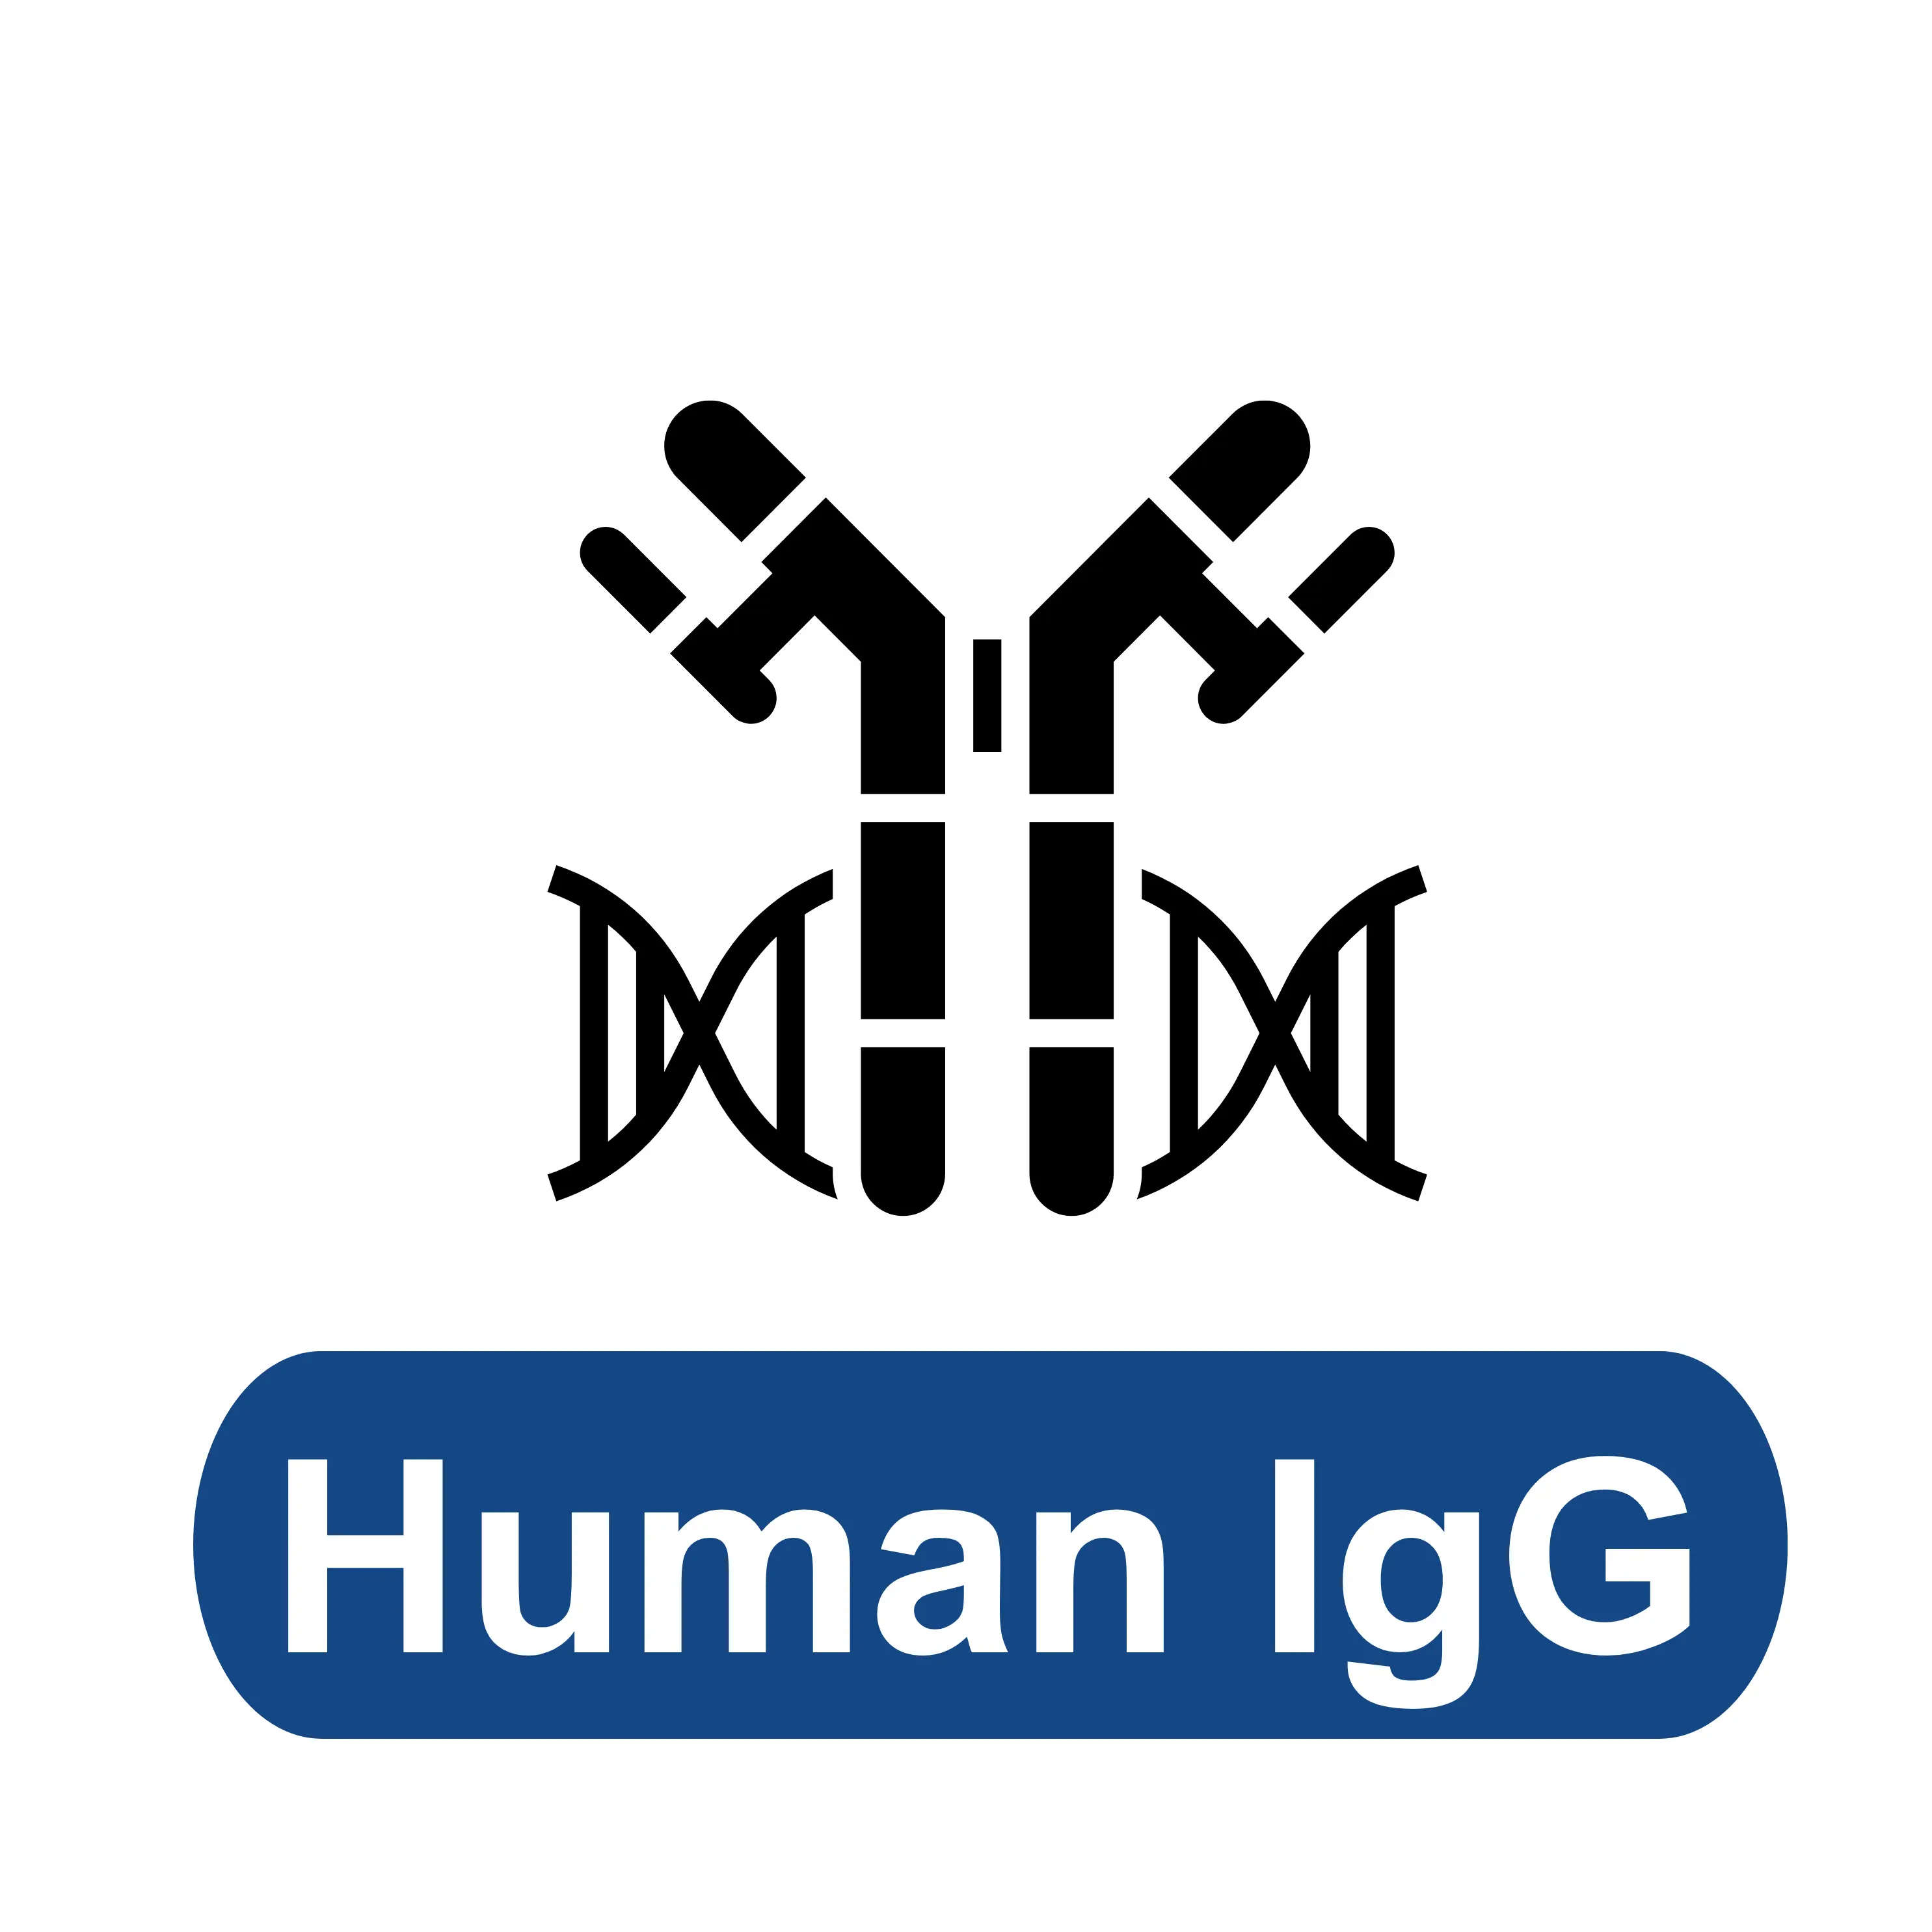 Human IgG